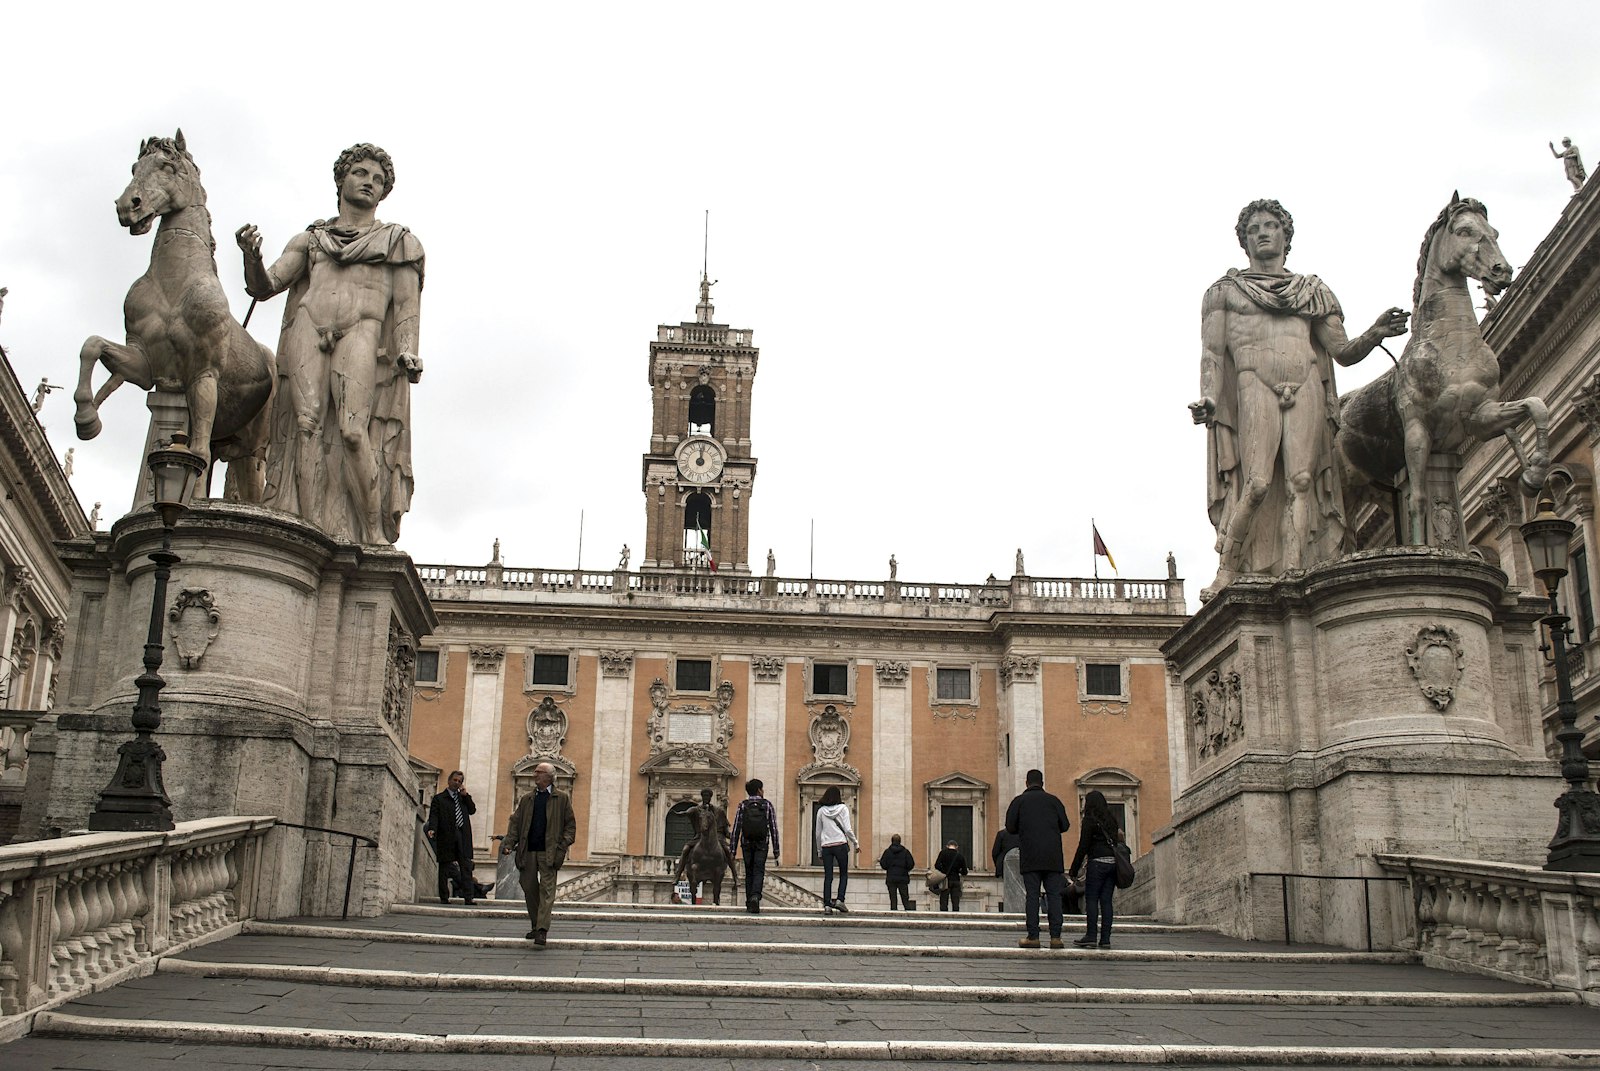 Dioscuri Statues, Capitoline Hill, Rome